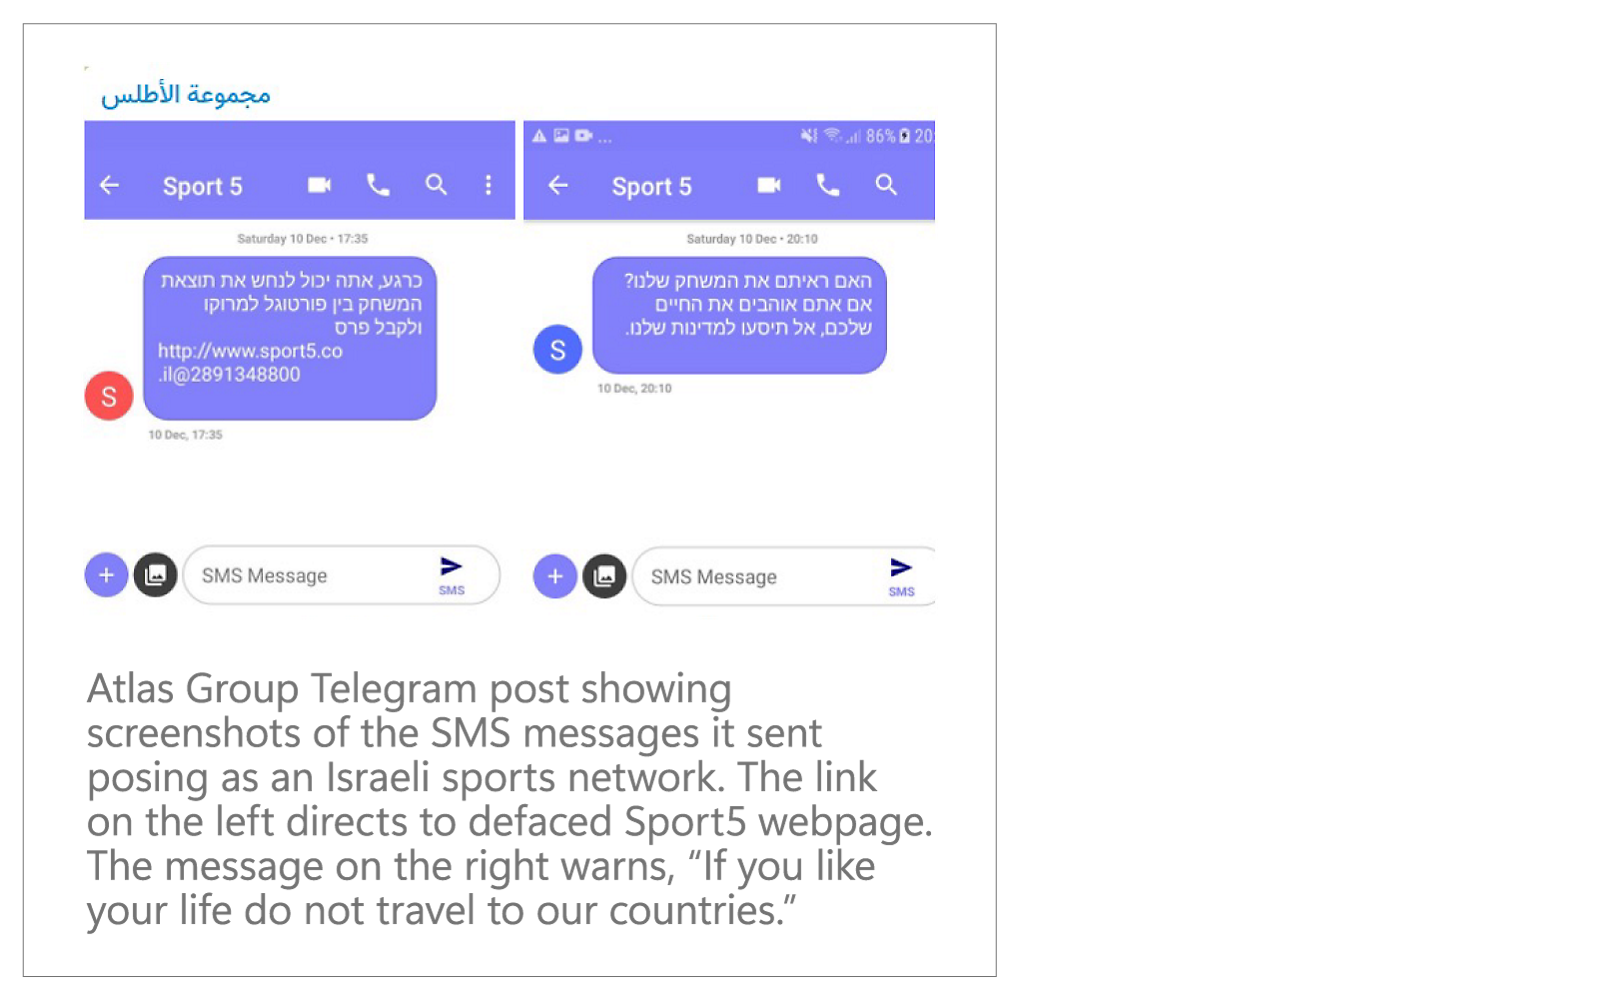 Telegram de Atlas Group: Recortes de pantalla de SMS imitando una red deportiva israelí.